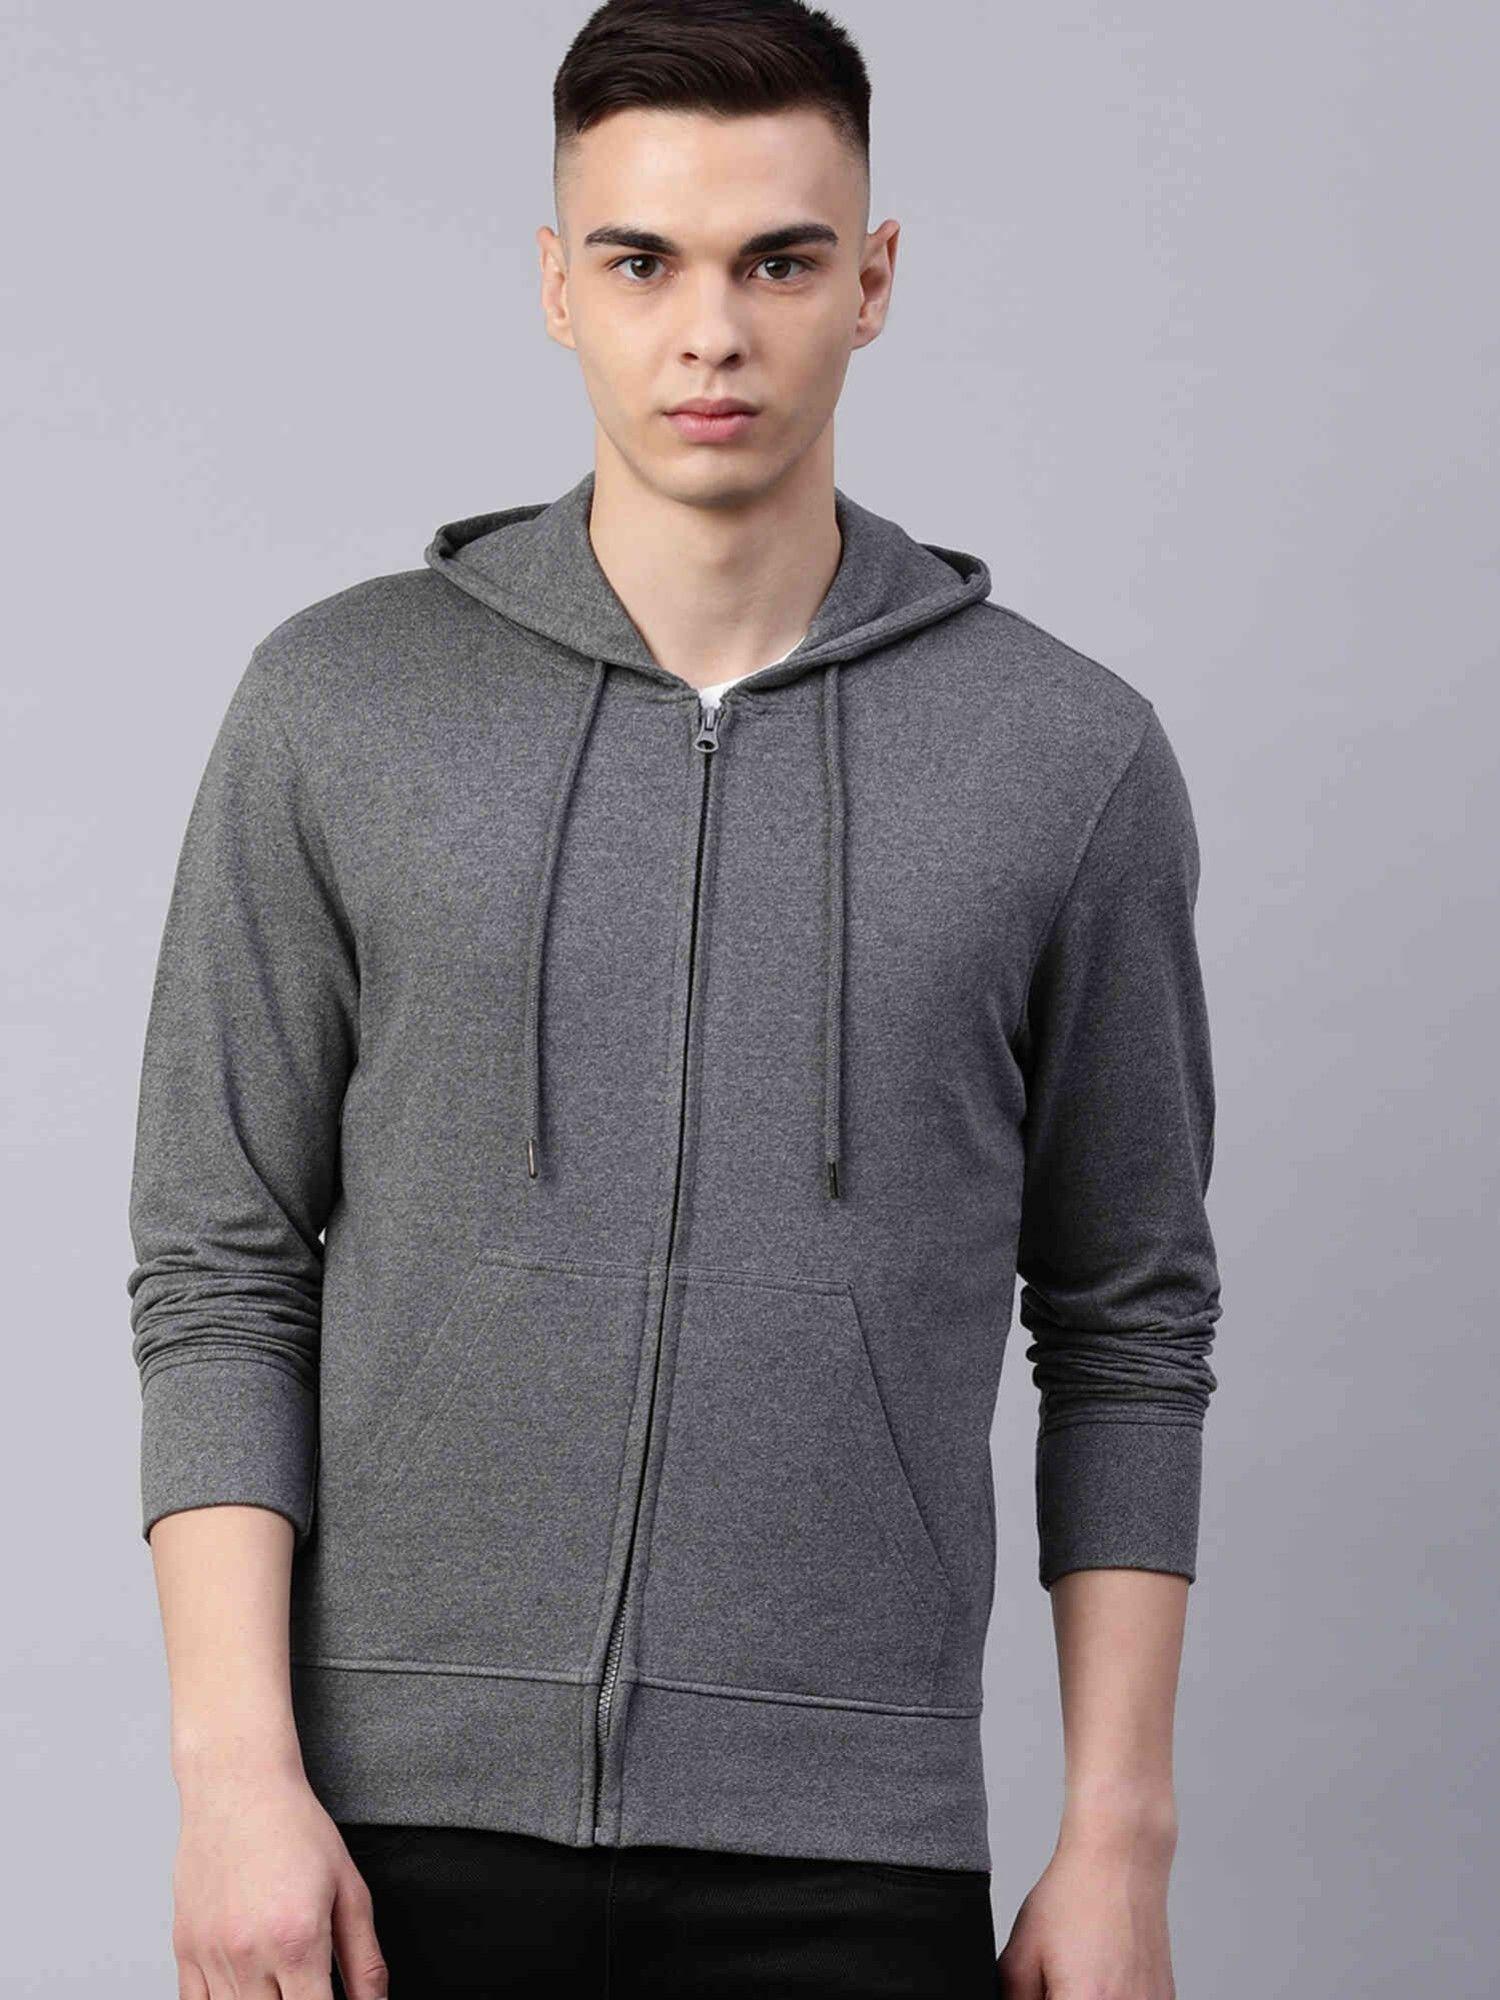 men-solid-zipper-hoodie-sweatshirt-with-pocket